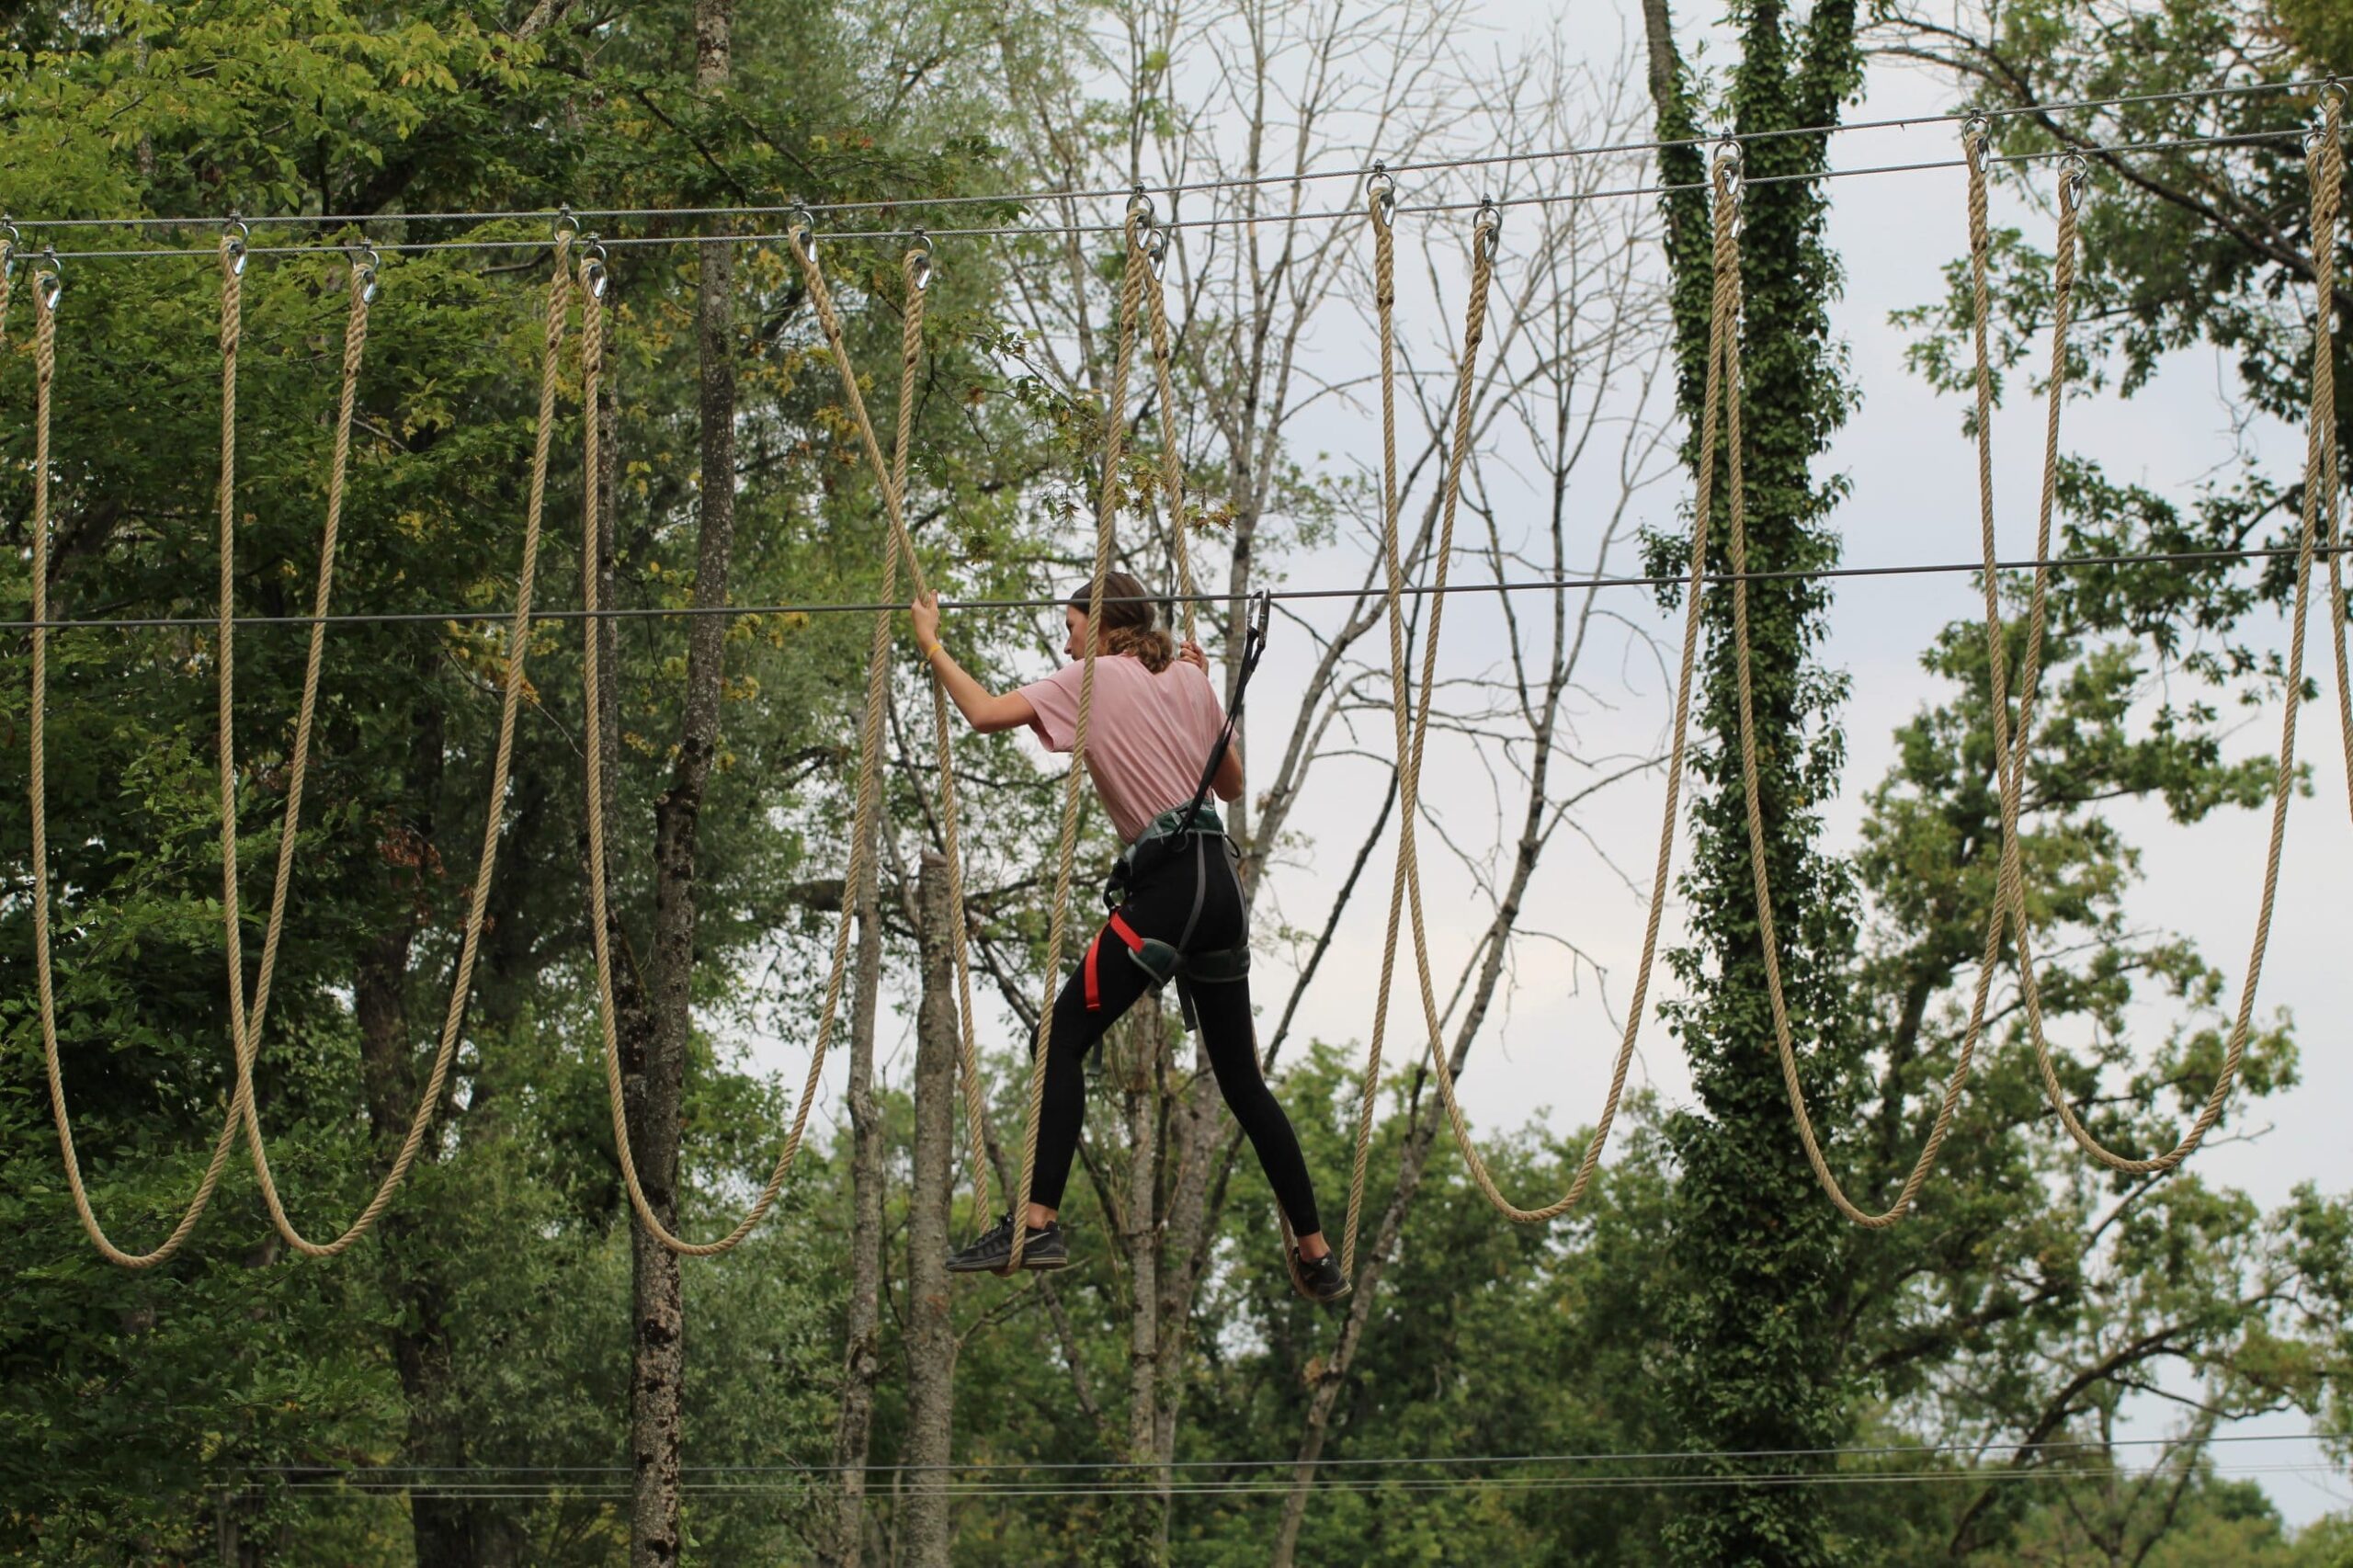 Treetop adventure course